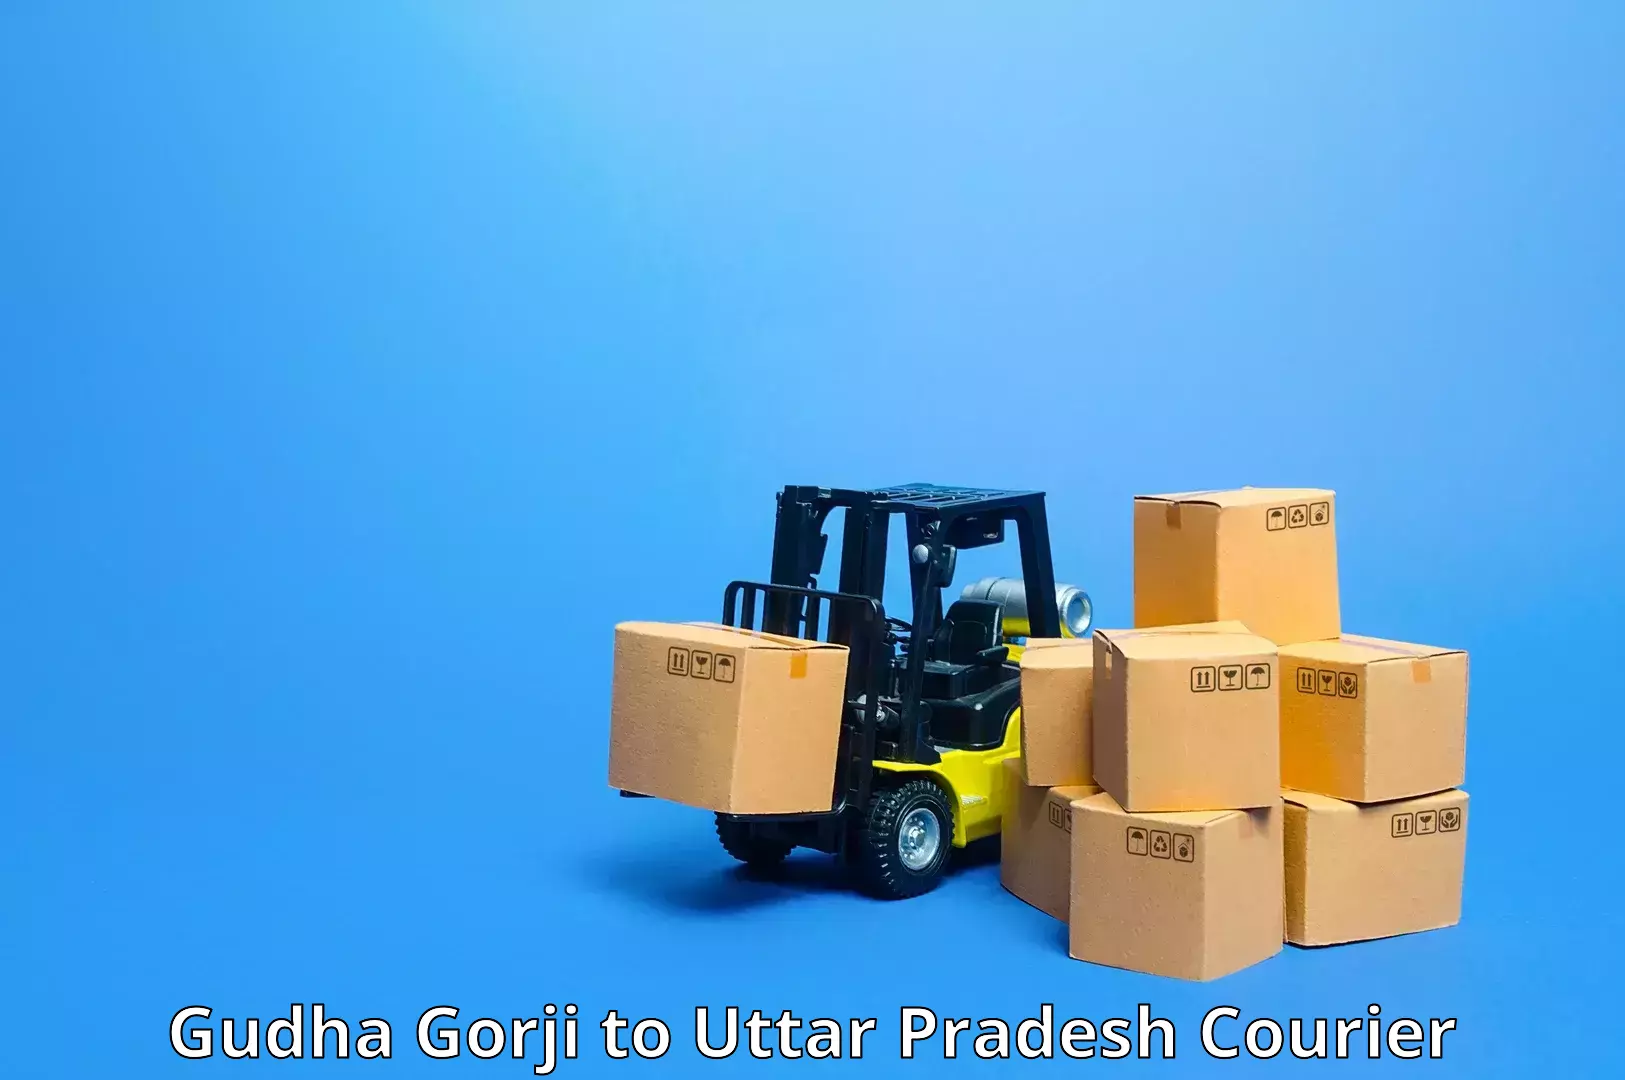 Express postal services in Gudha Gorji to Dhaurahara